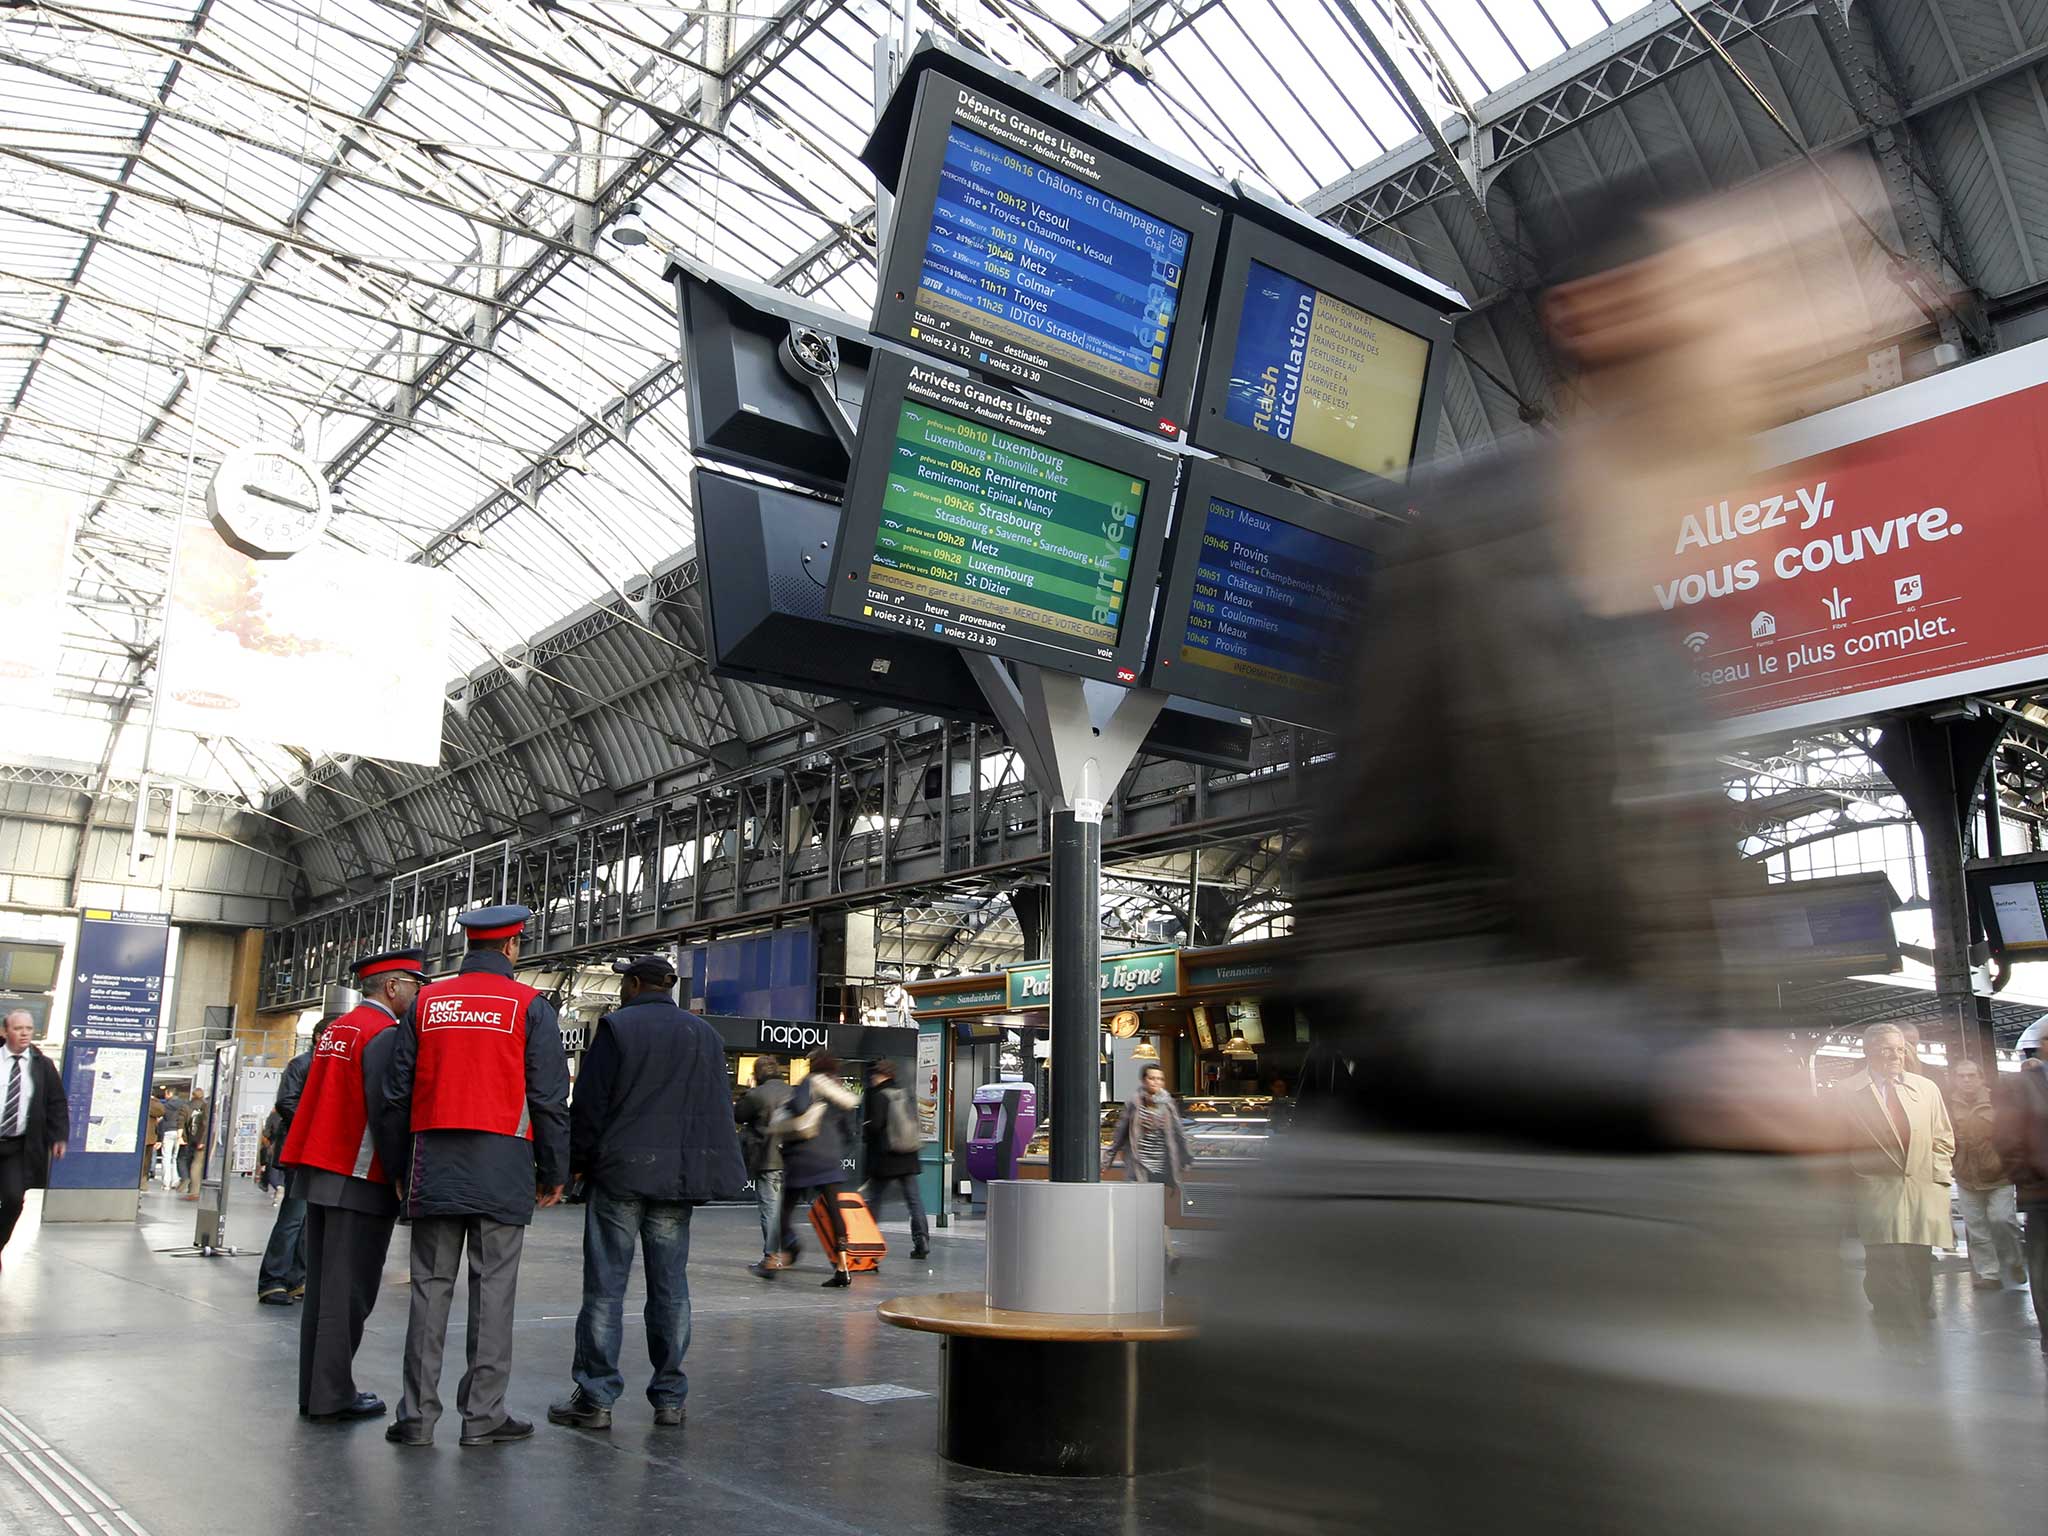 Gare de l’Est has been evacuated